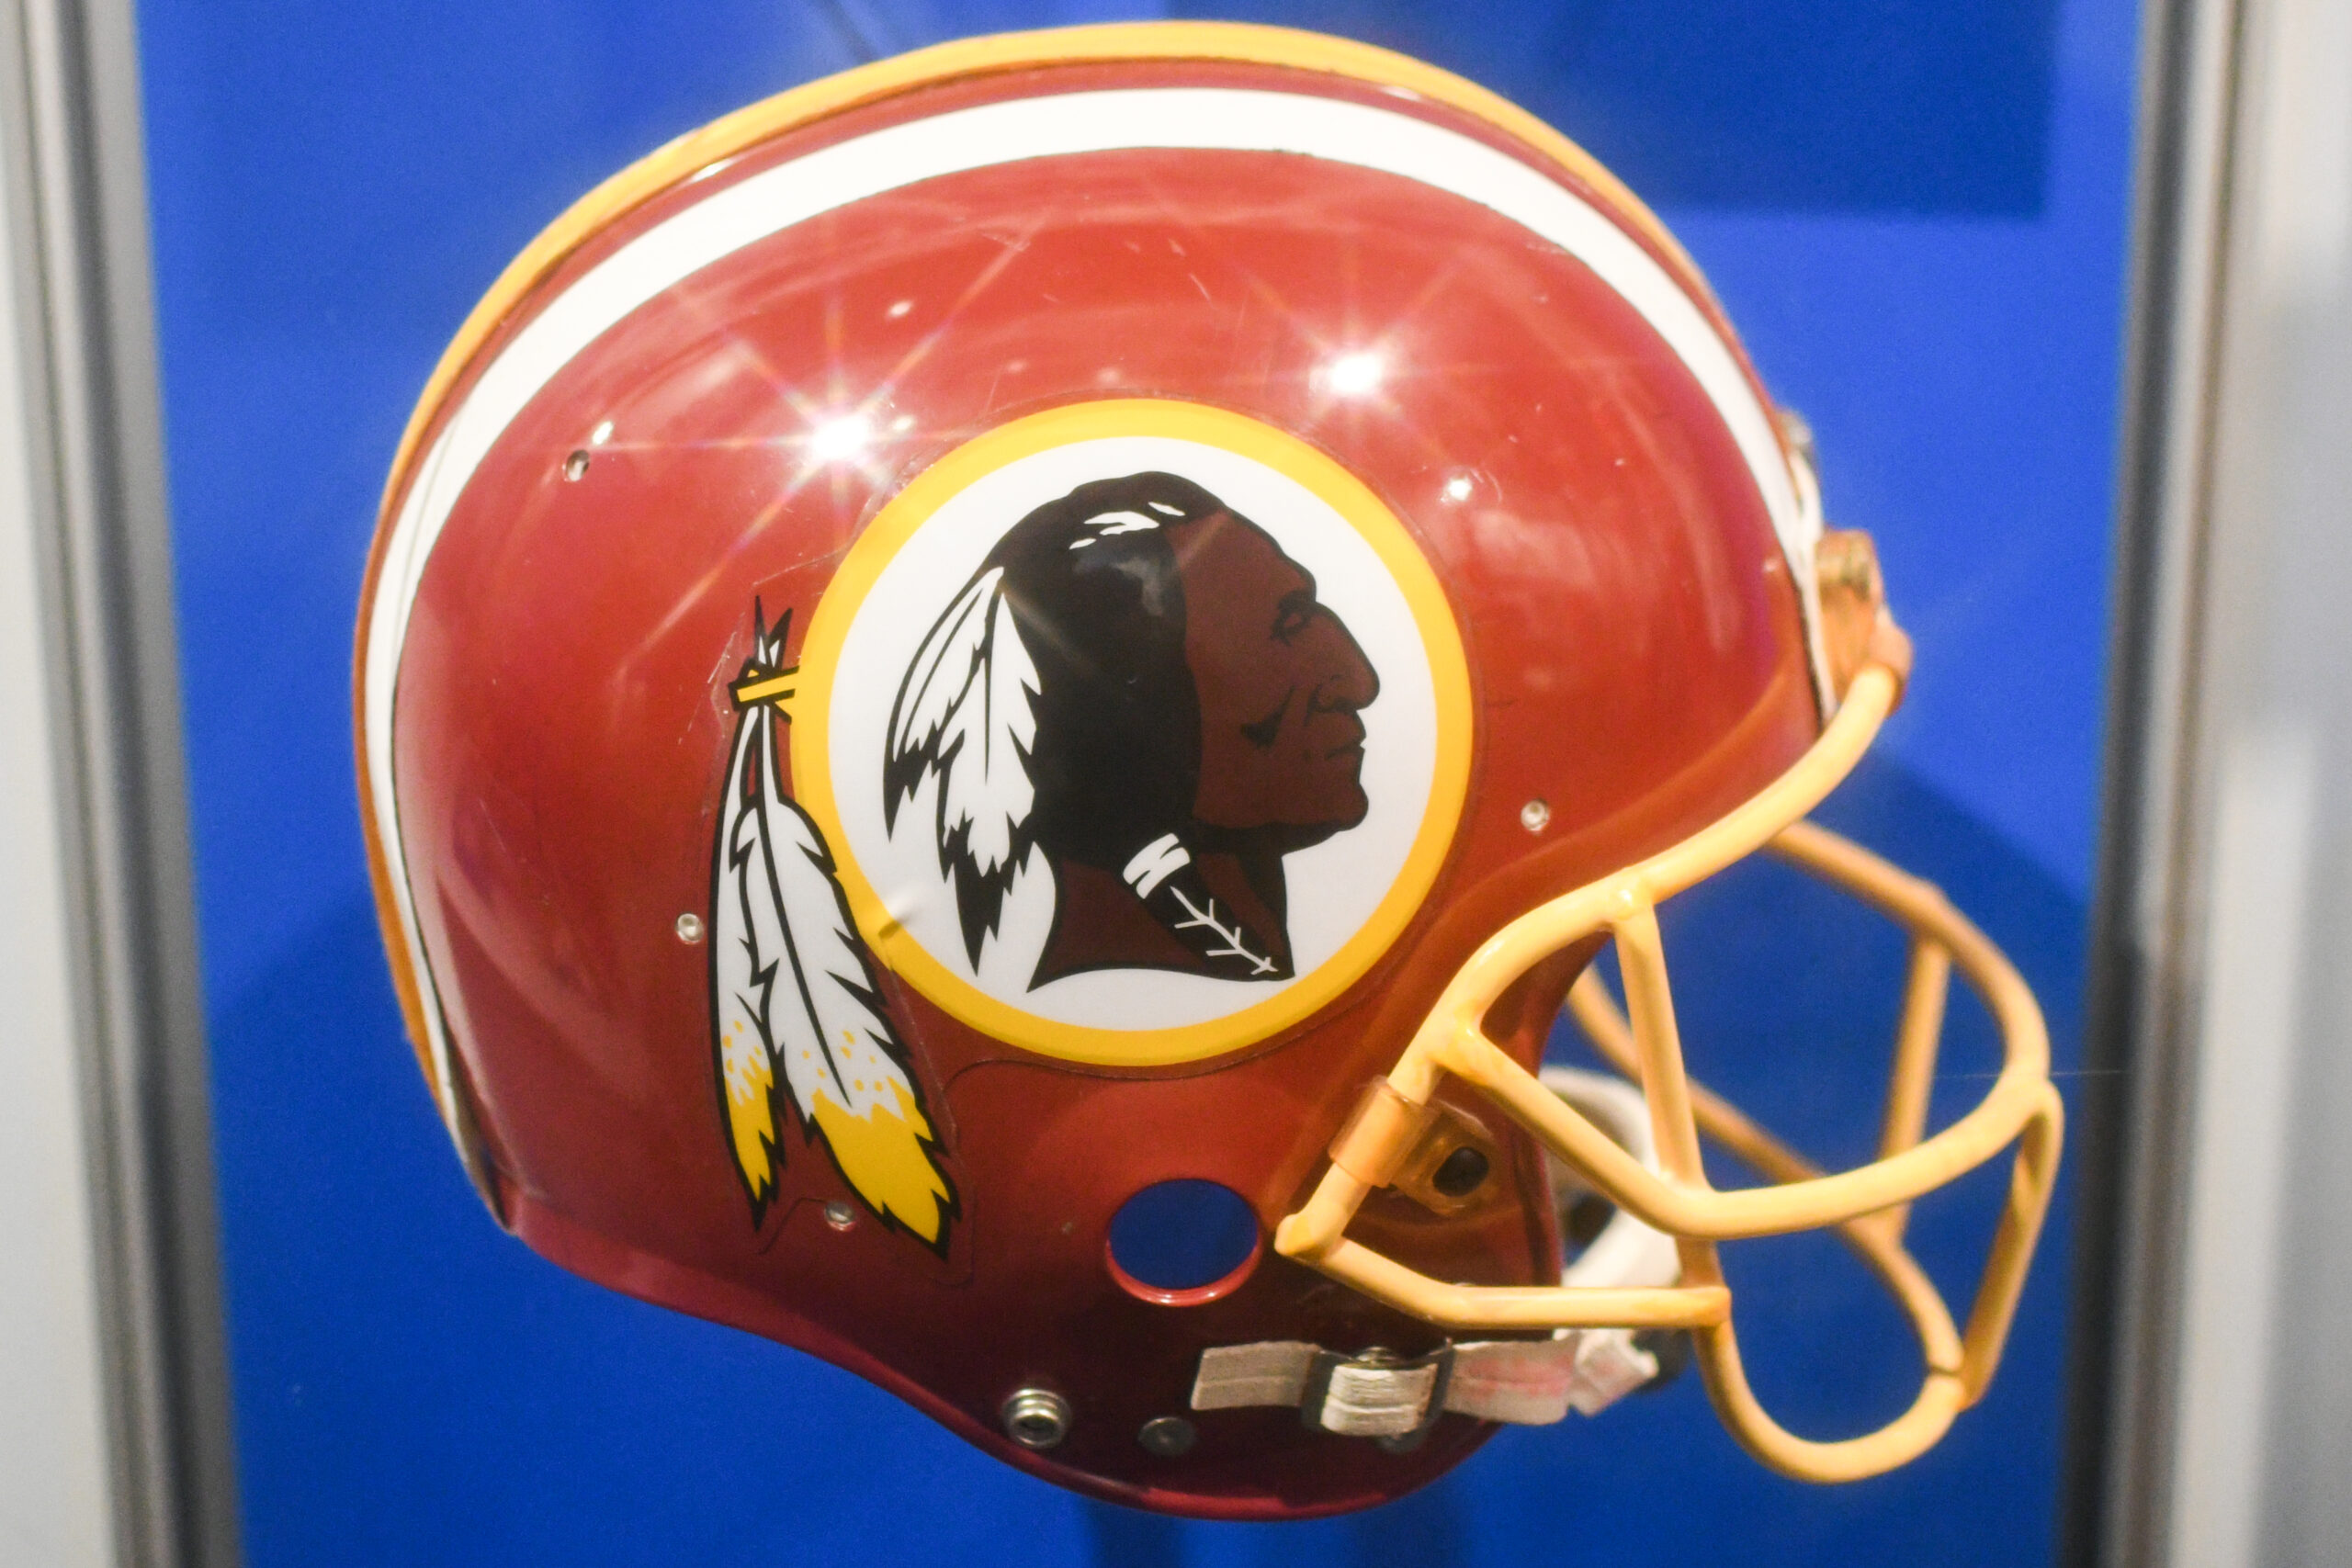 Washington football team helmet